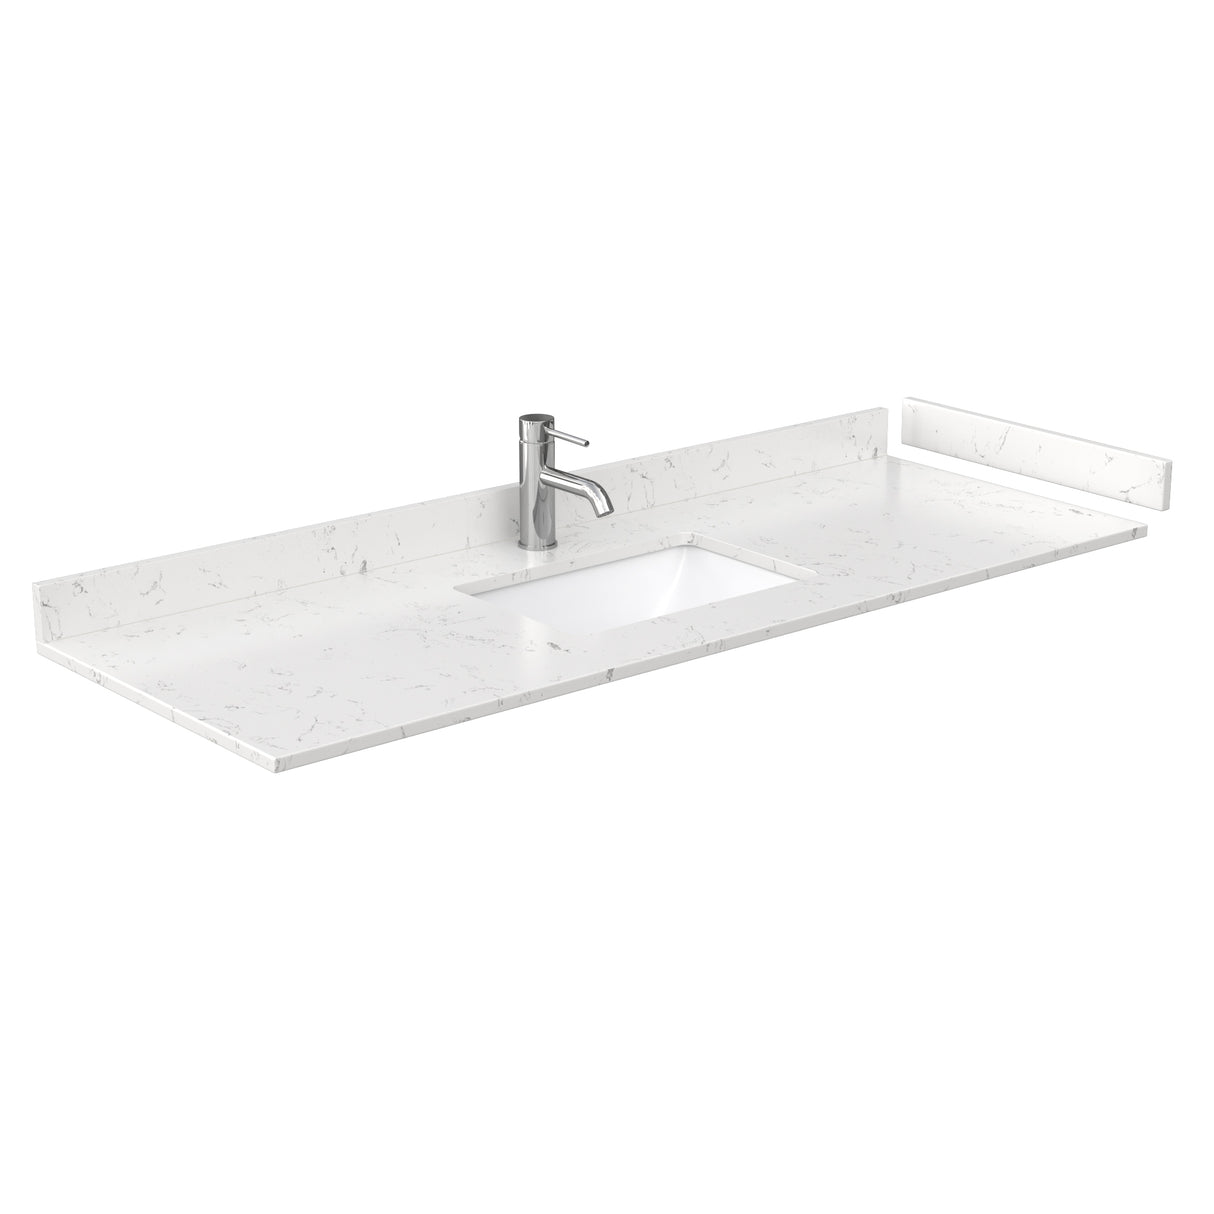 Daria 60 Inch Single Bathroom Vanity in Dark Espresso Carrara Cultured Marble Countertop Undermount Square Sink No Mirror